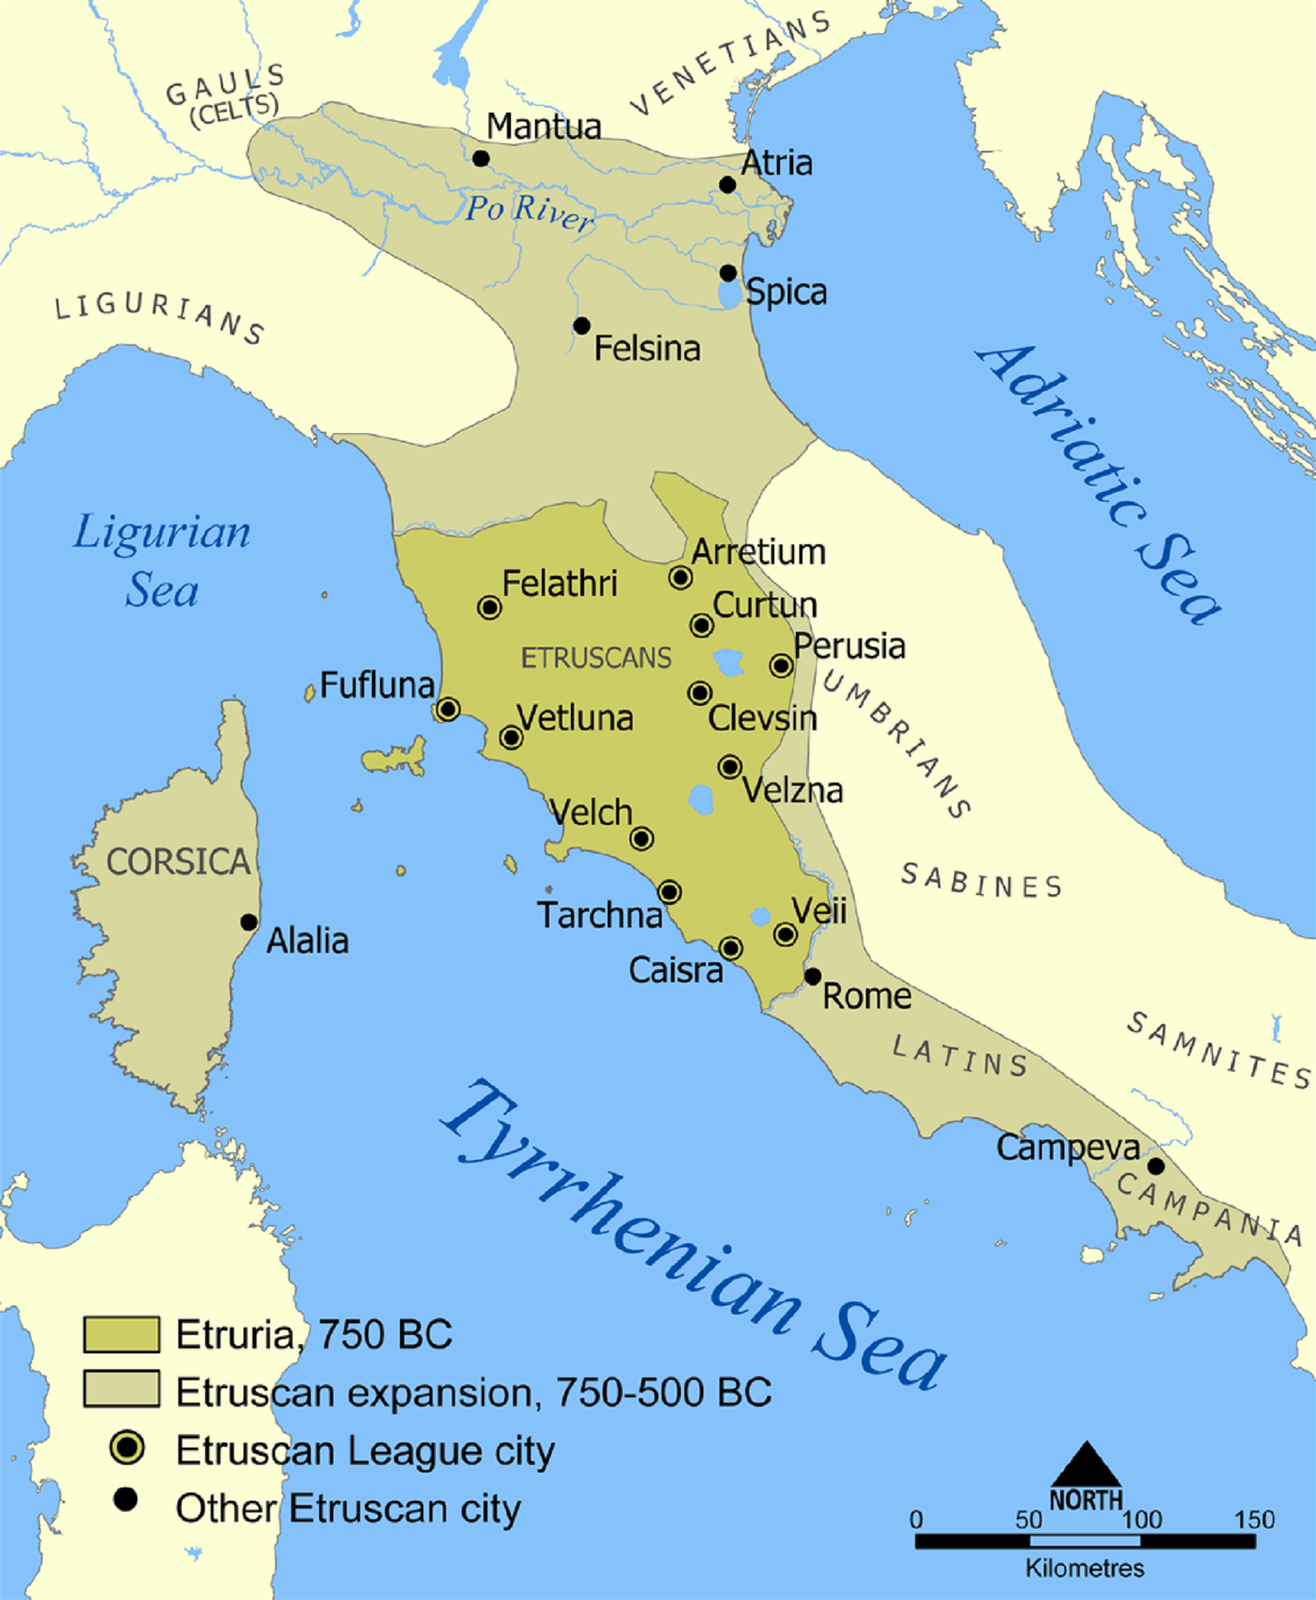 Mapa Etruskiej cywilizacji z zaznaczonymi miastami i morzami. Na mapie jest zaznaczona Etruria z 750 r. p.n.e. oraz tereny podbite przez Etrusków w latach 750-500 p.n.e.